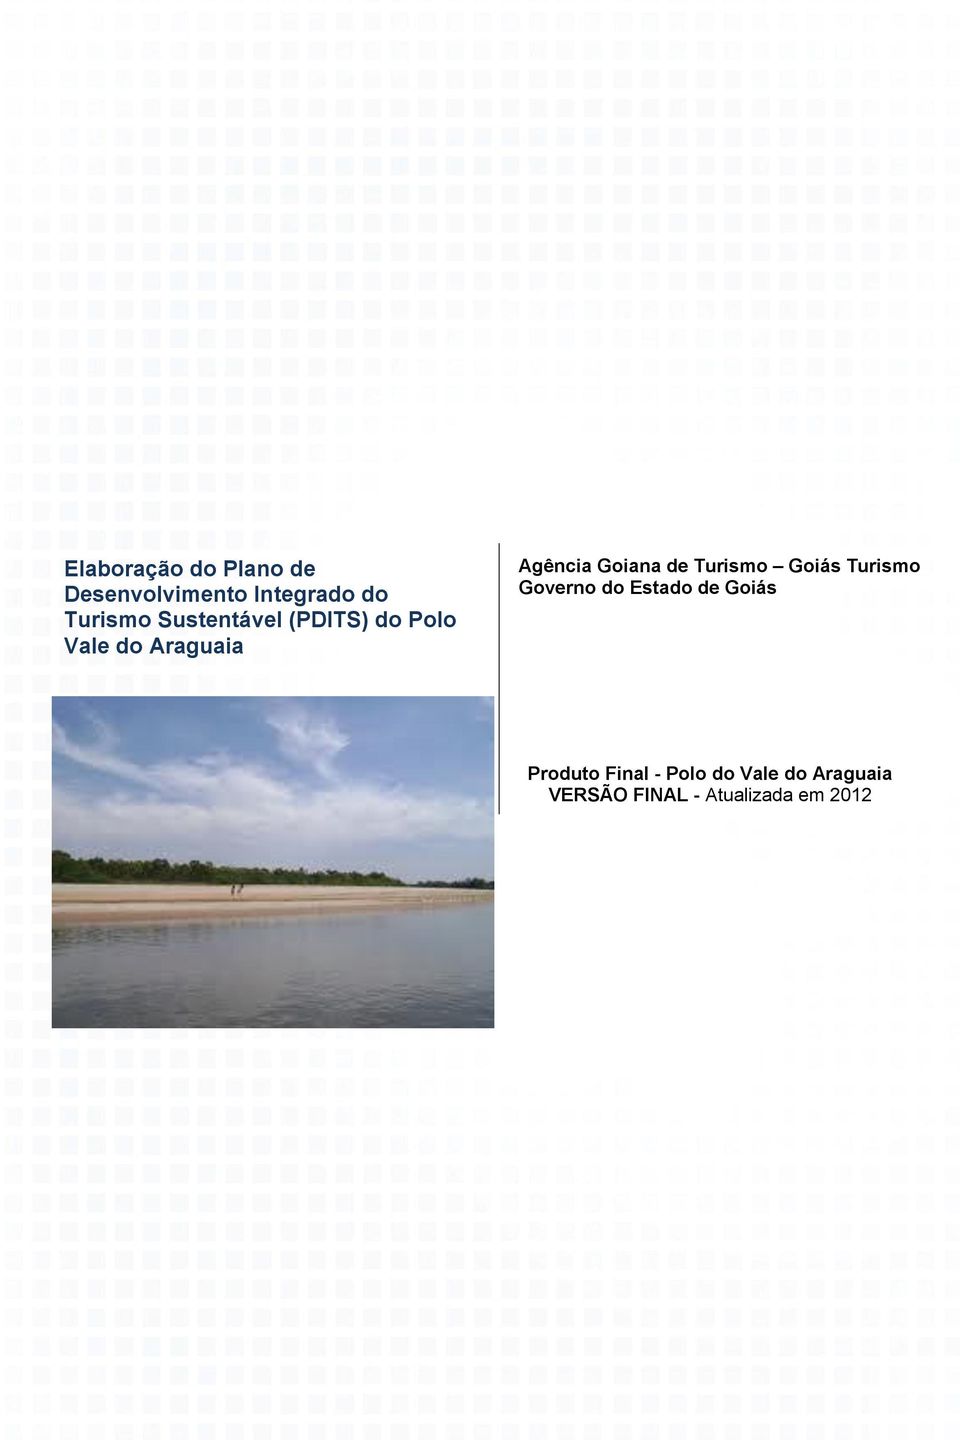 Vale do Araguaia VERSÃO FINAL - Atualizada em 2012 1 Este Relatório contém informações confidenciais.